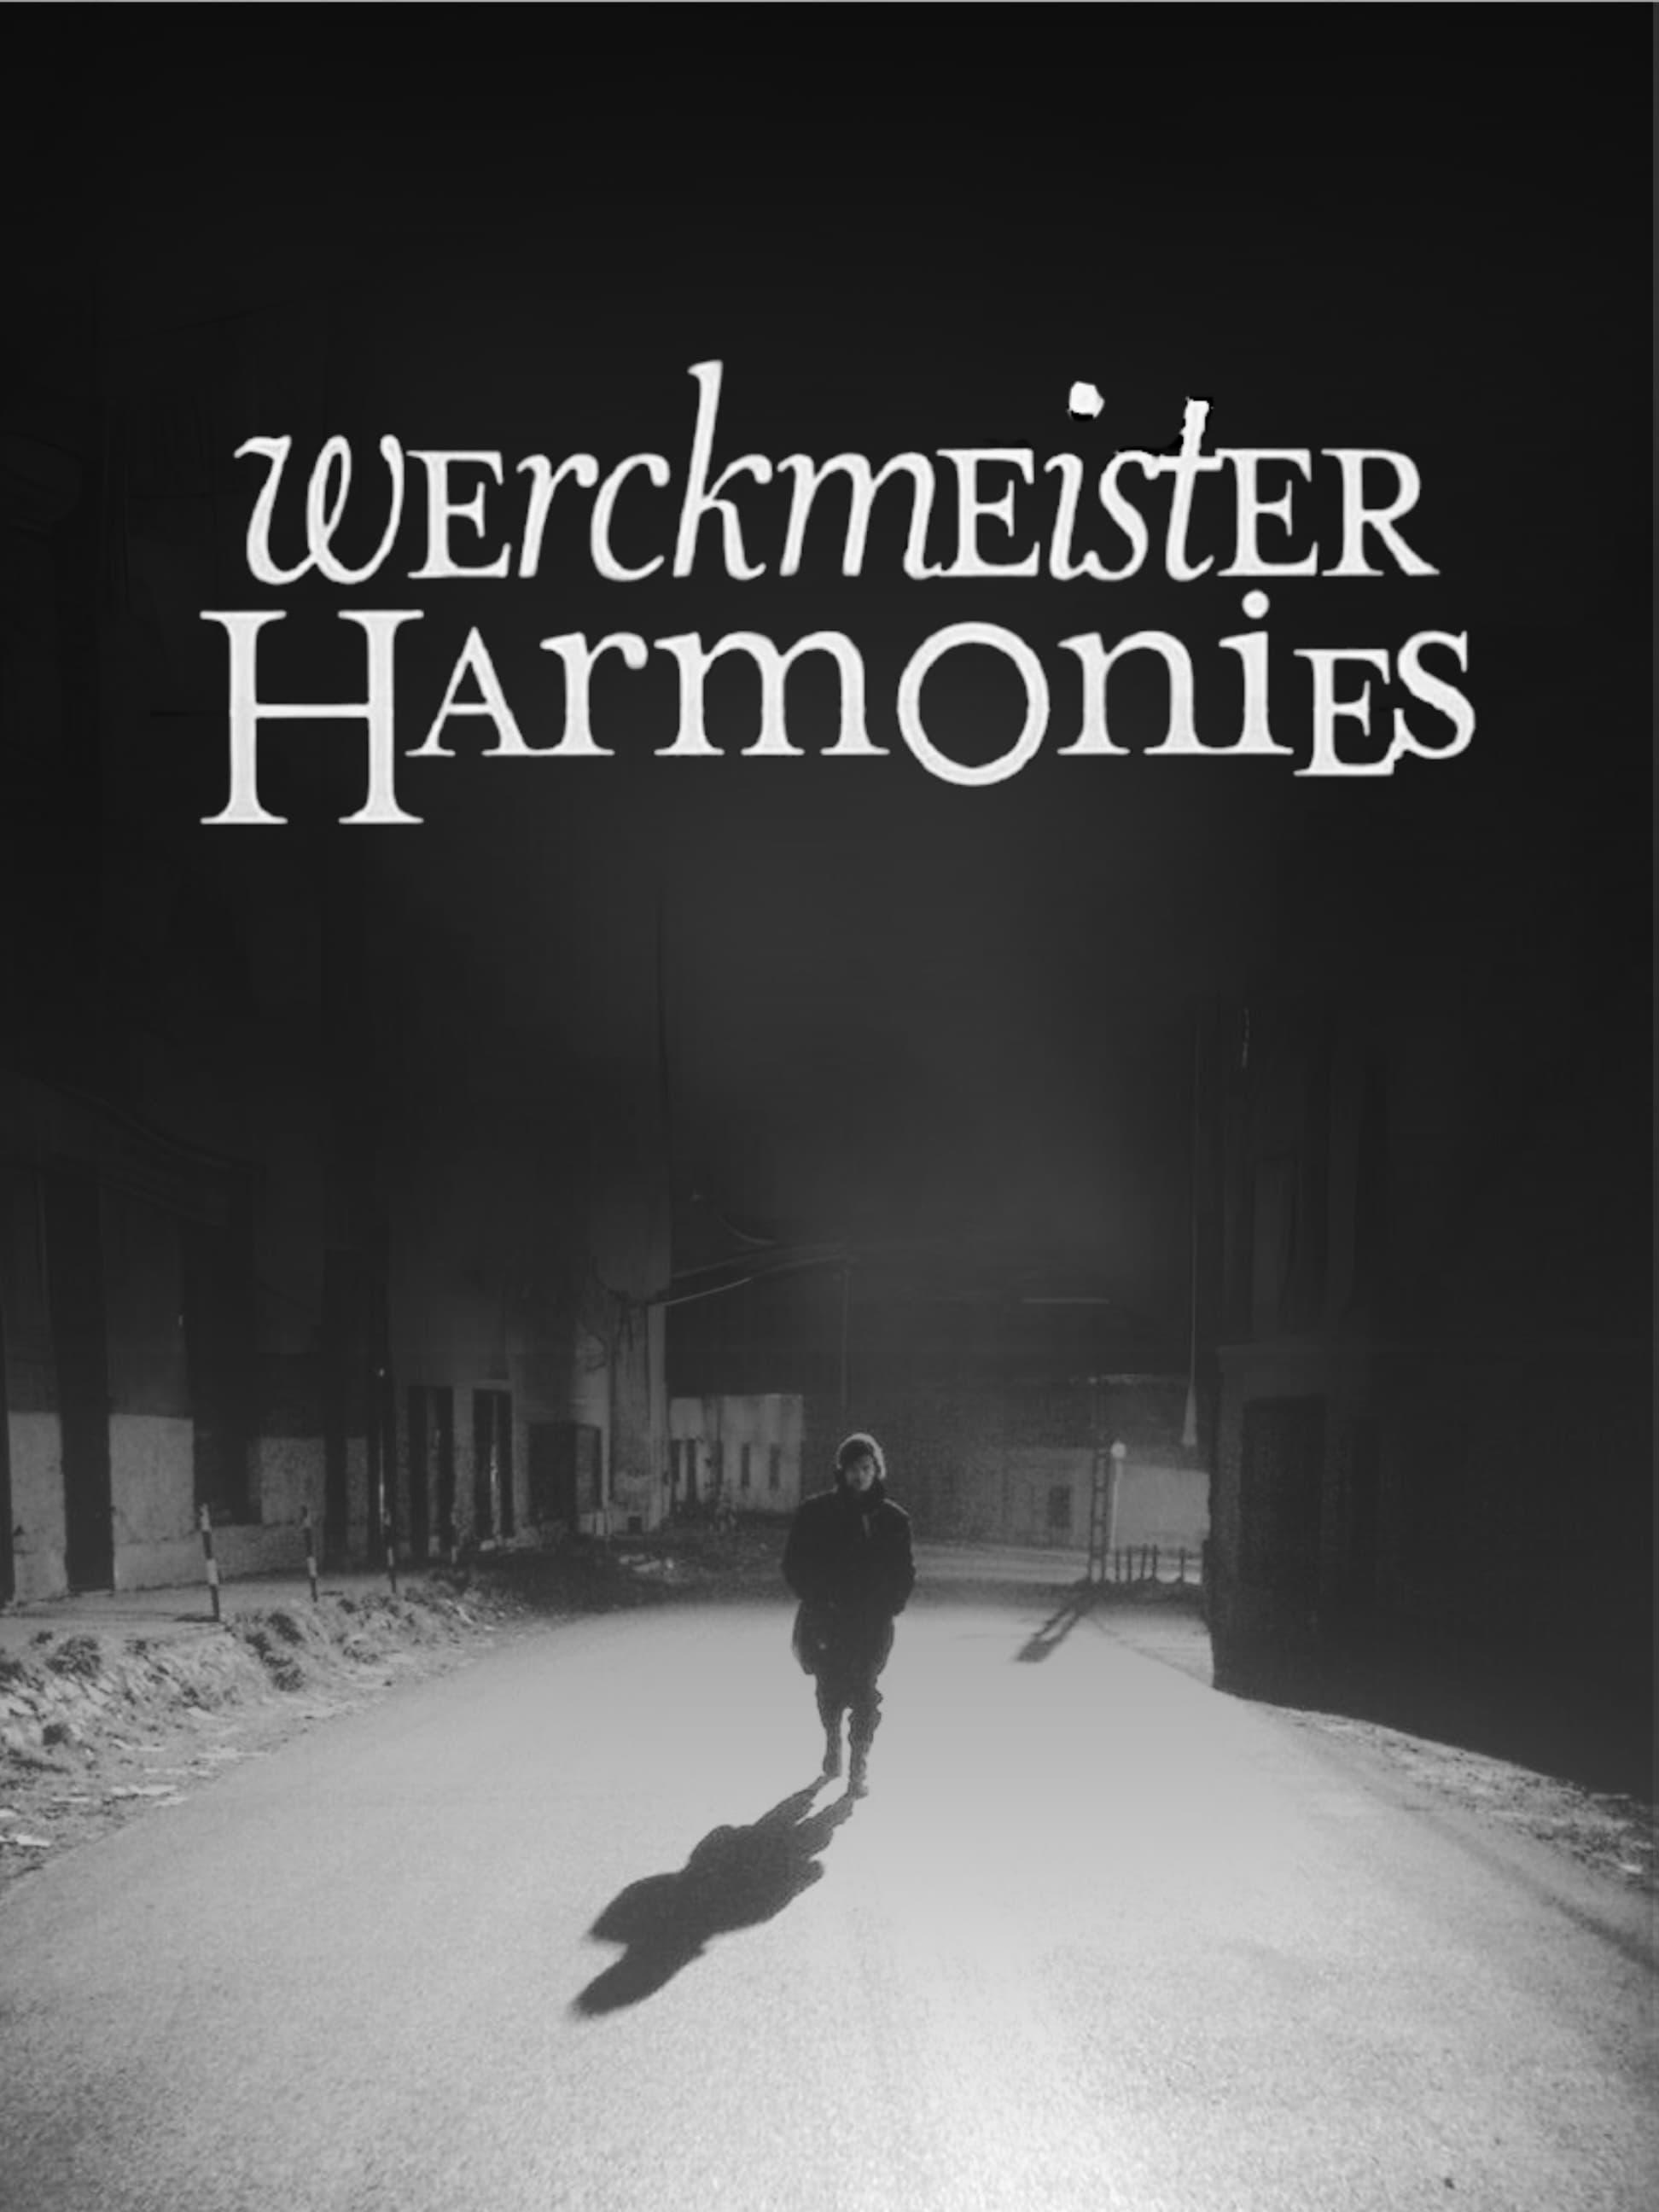 Werckmeister Harmonies poster